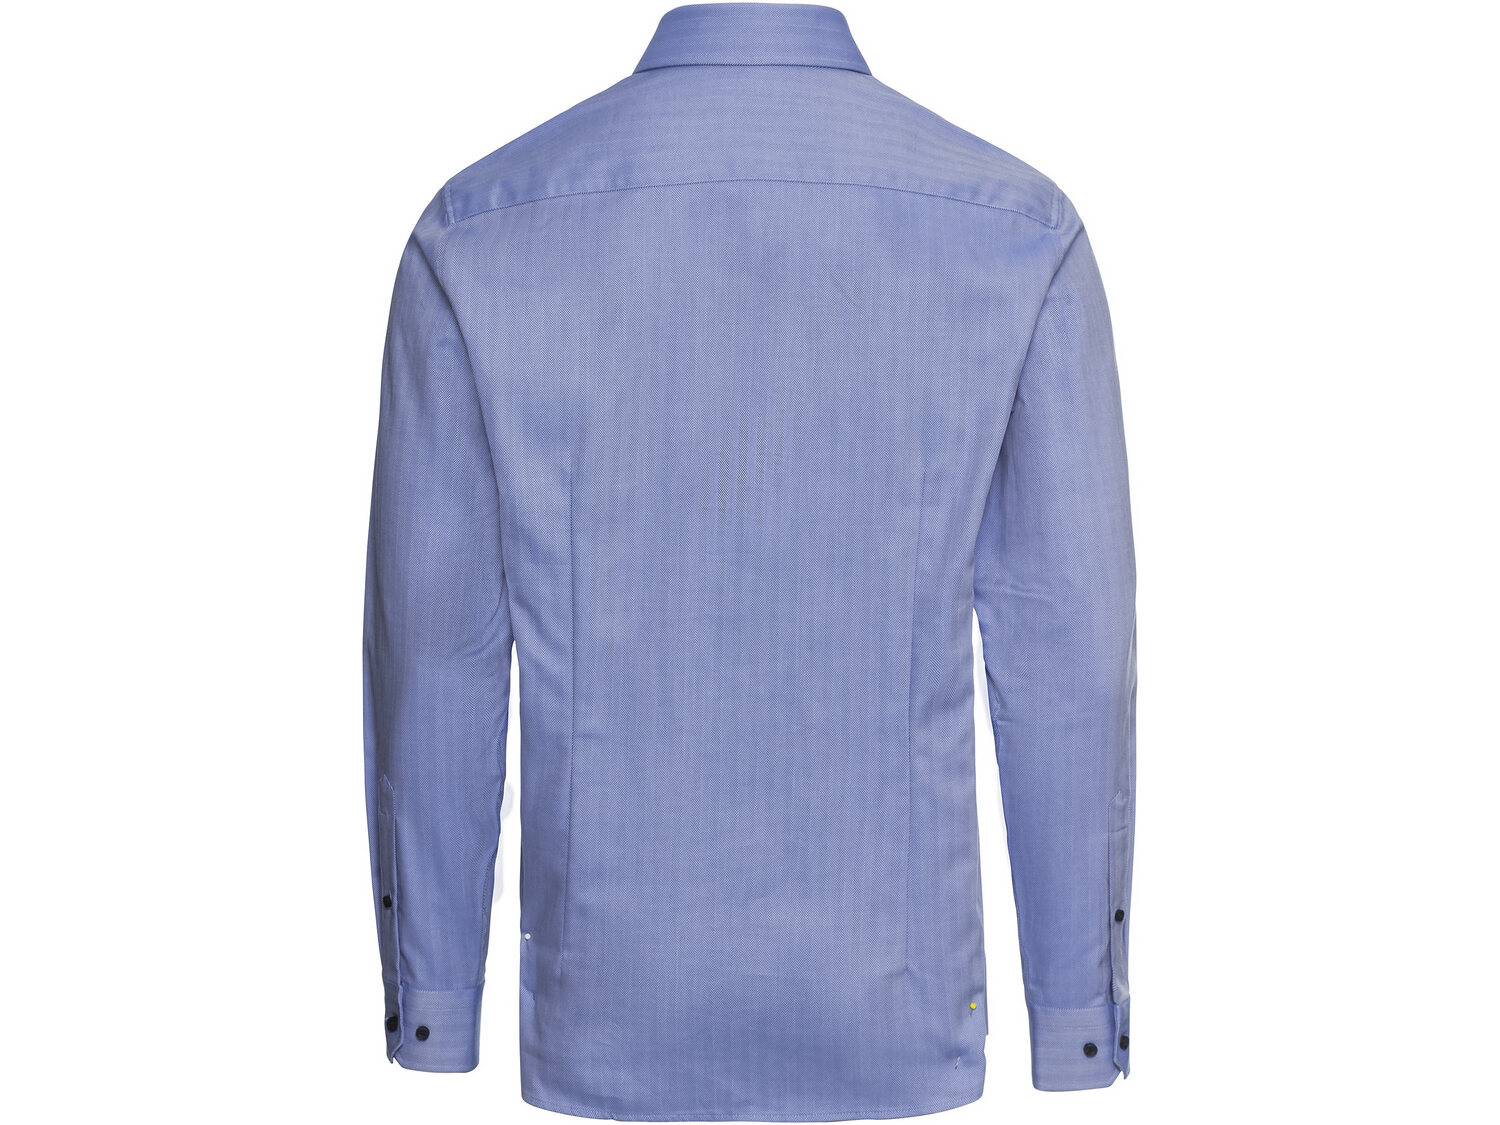 Koszula , cena 49,99 PLN 
- 100% bawełny
- rozmiary: 39-42
- slim fit - krój ...